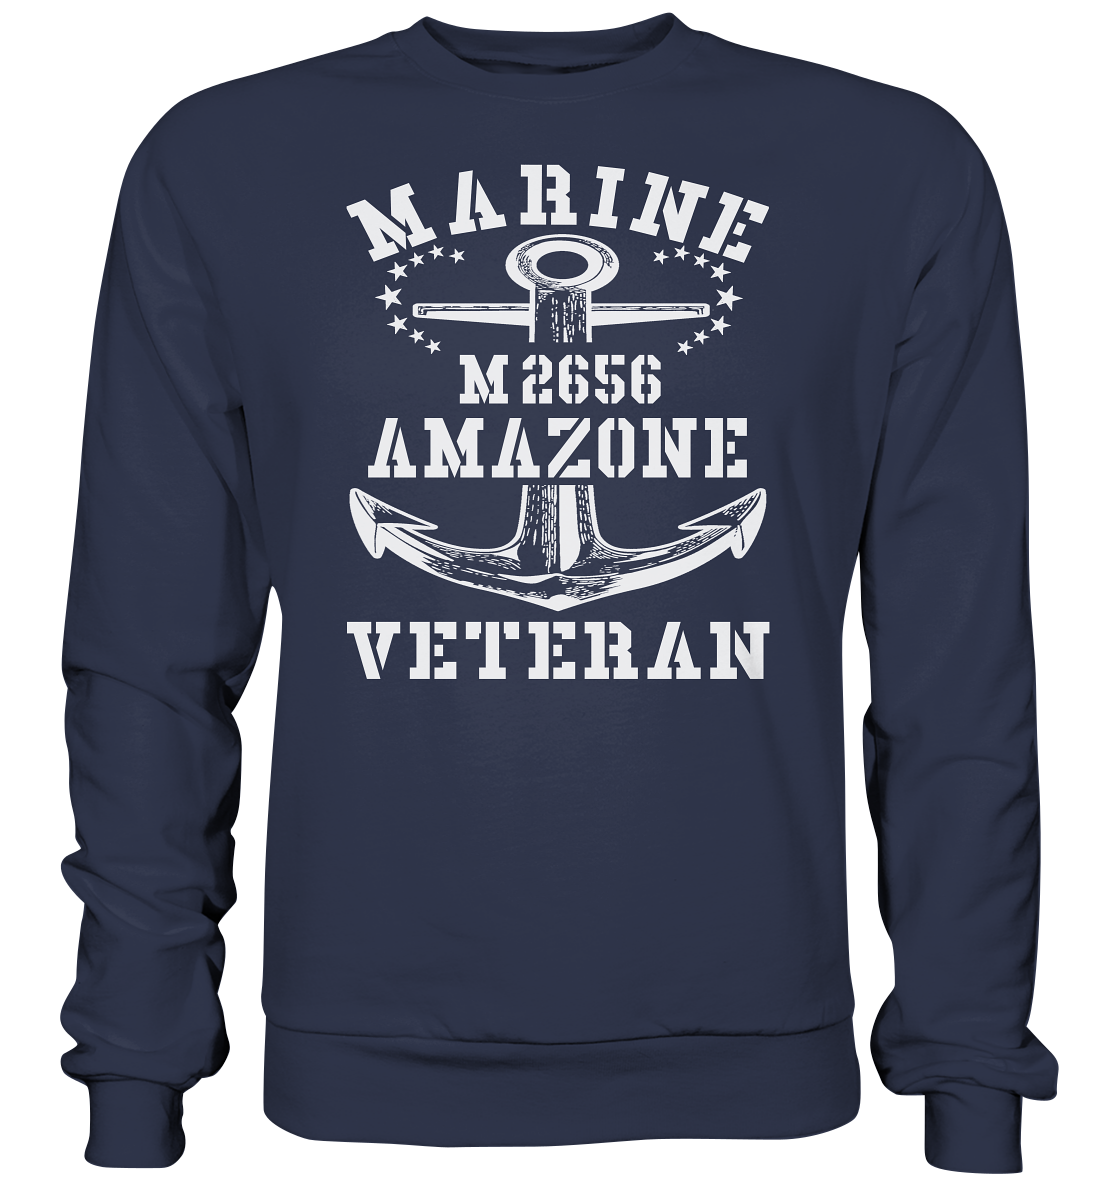 BiMi M2656 AMAZONE Marine Veteran - Premium Sweatshirt